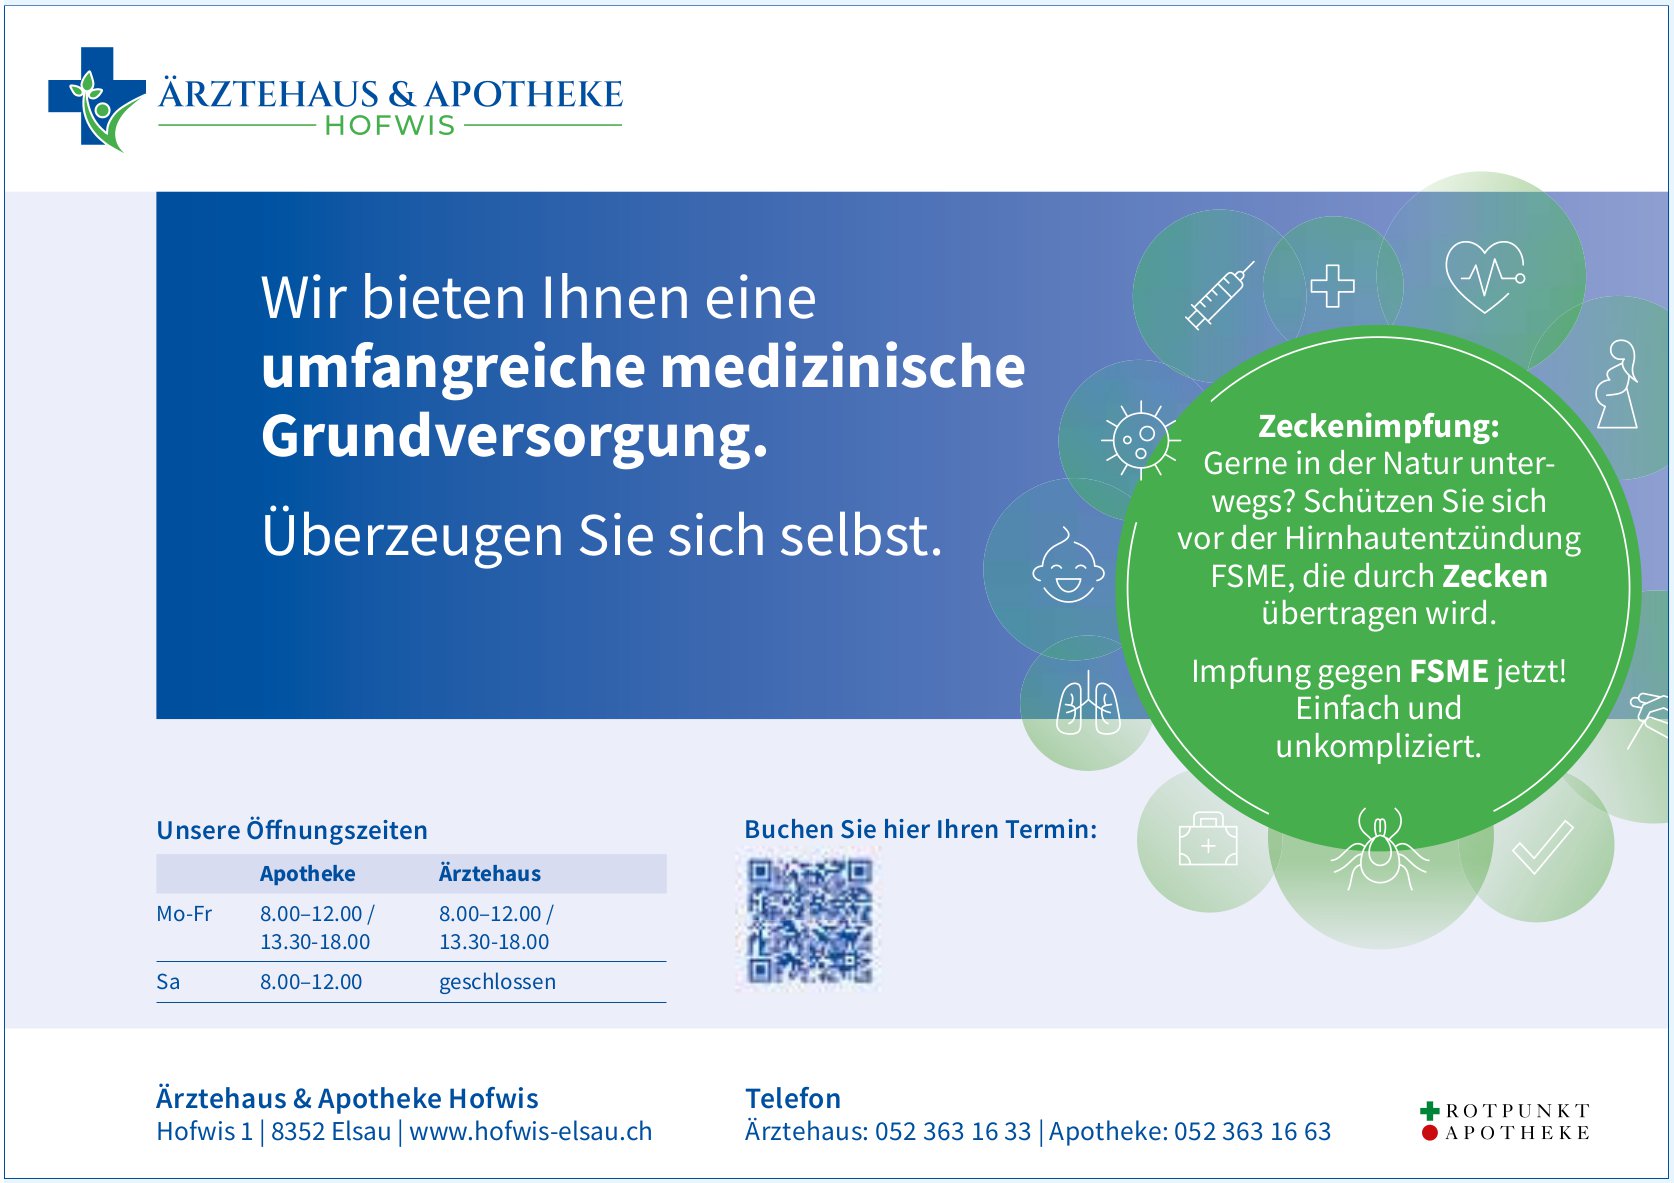 Ärztehaus & Apotheke Hofwis, Elsau - Wir bieten Ihnen eine umfangreiche medizinische Grundversorgung.